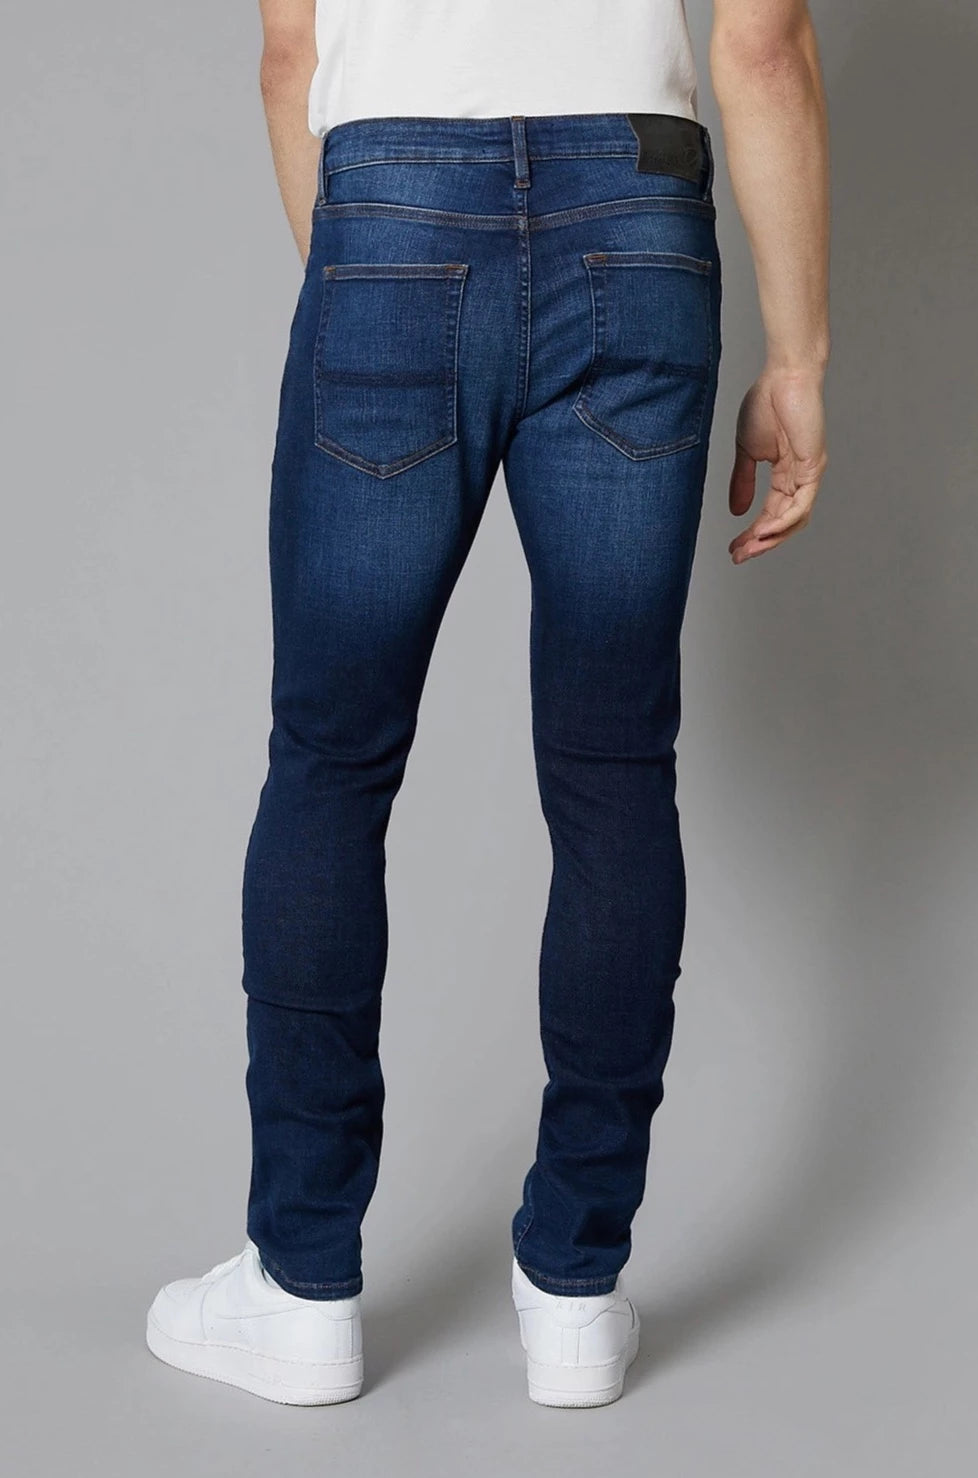 DML Jeans Dakota Slim Fit Jeans In Dark Blue